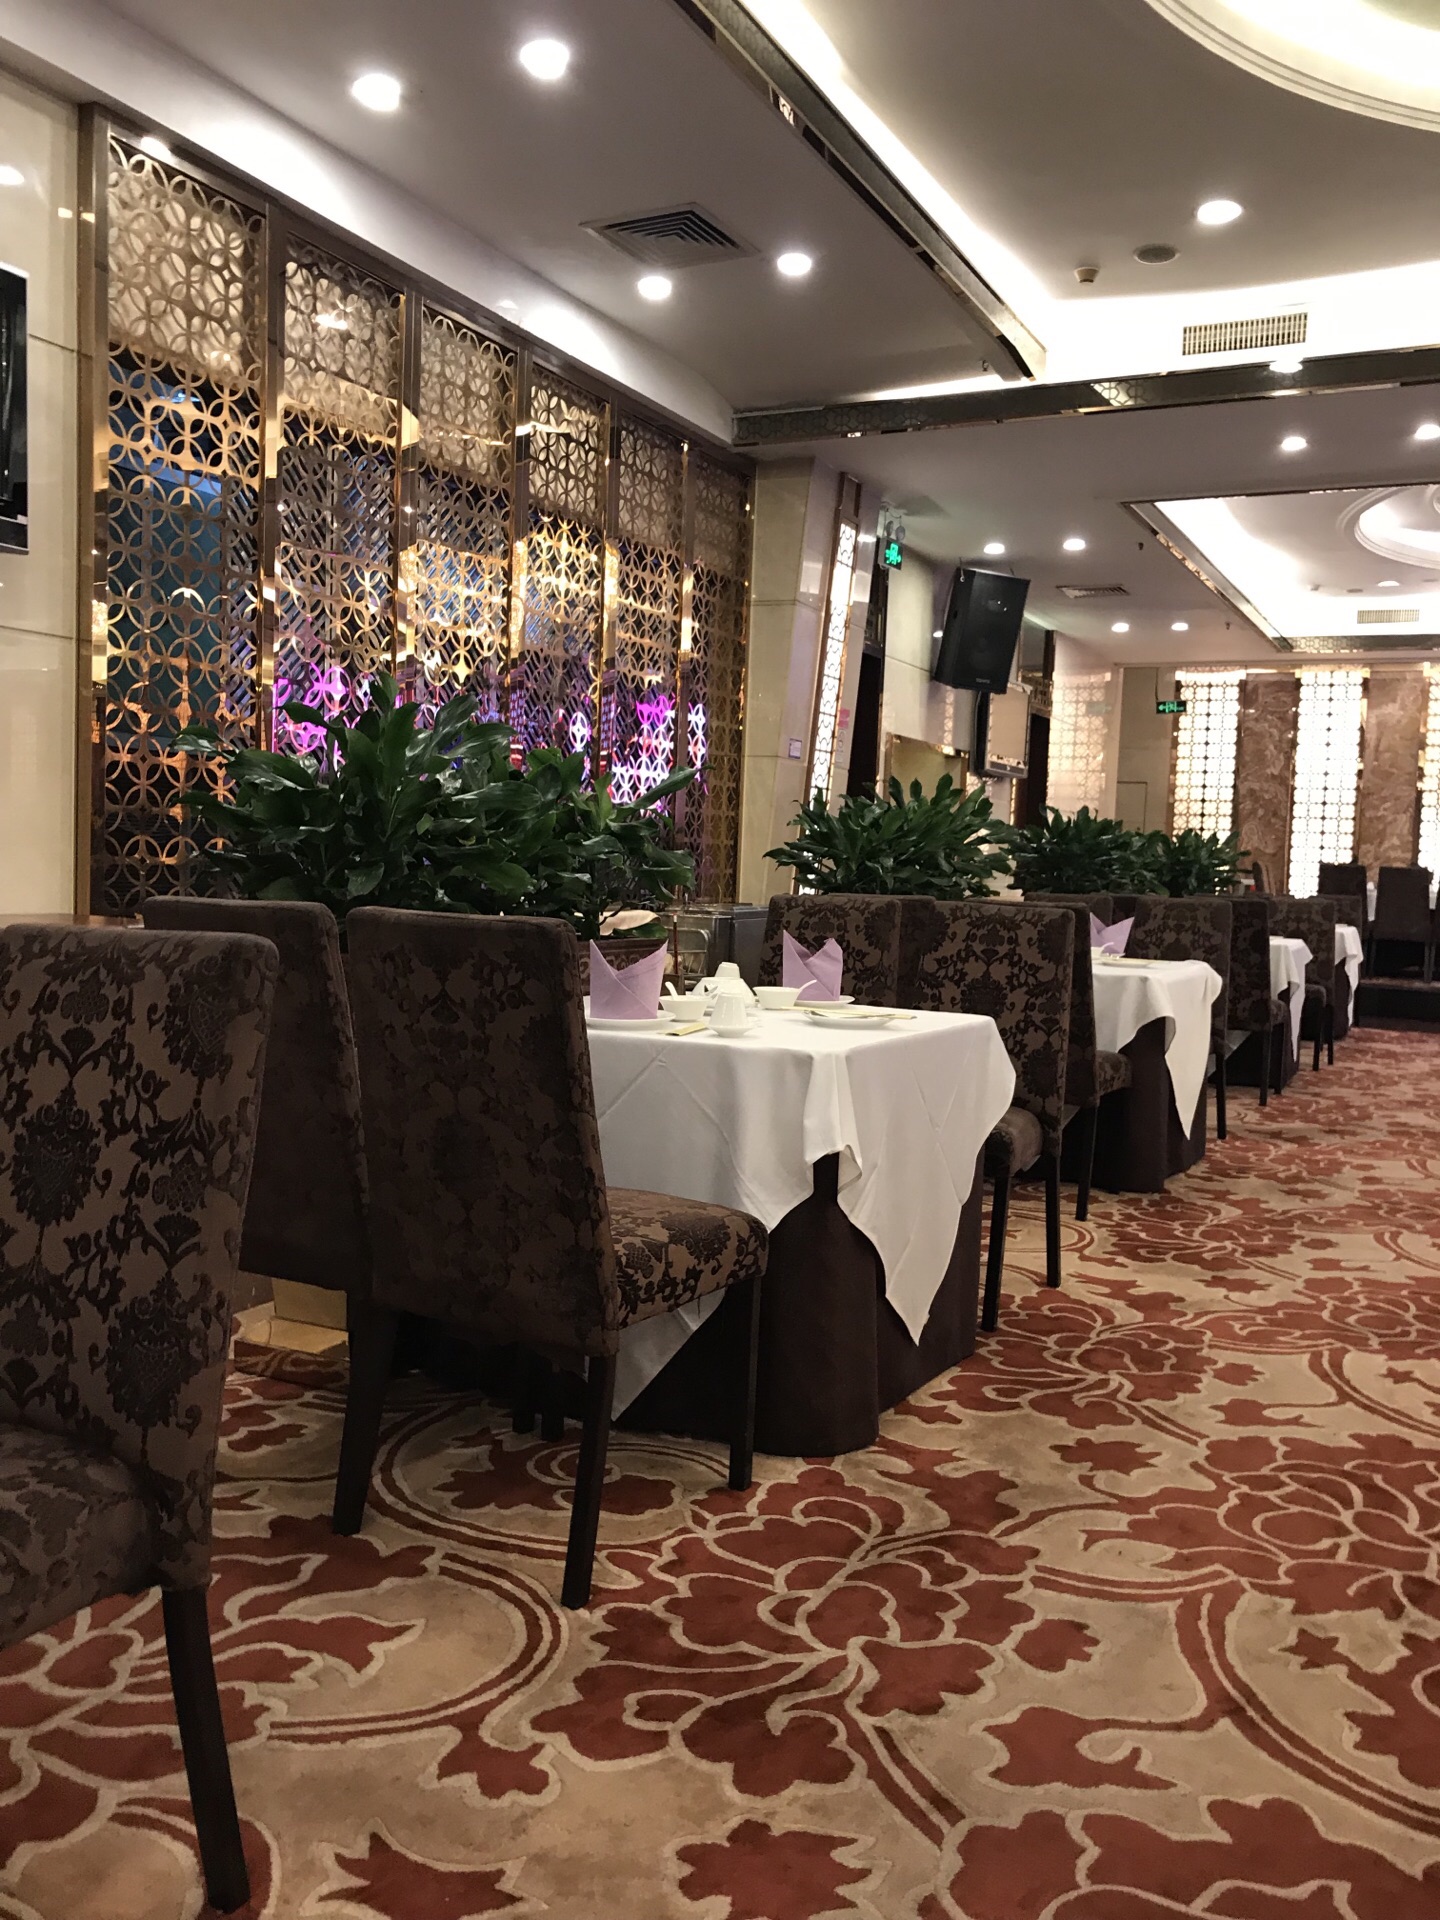 2023广州酒家(体育东路店)美食餐厅,一般来说都是吃早茶的,但是